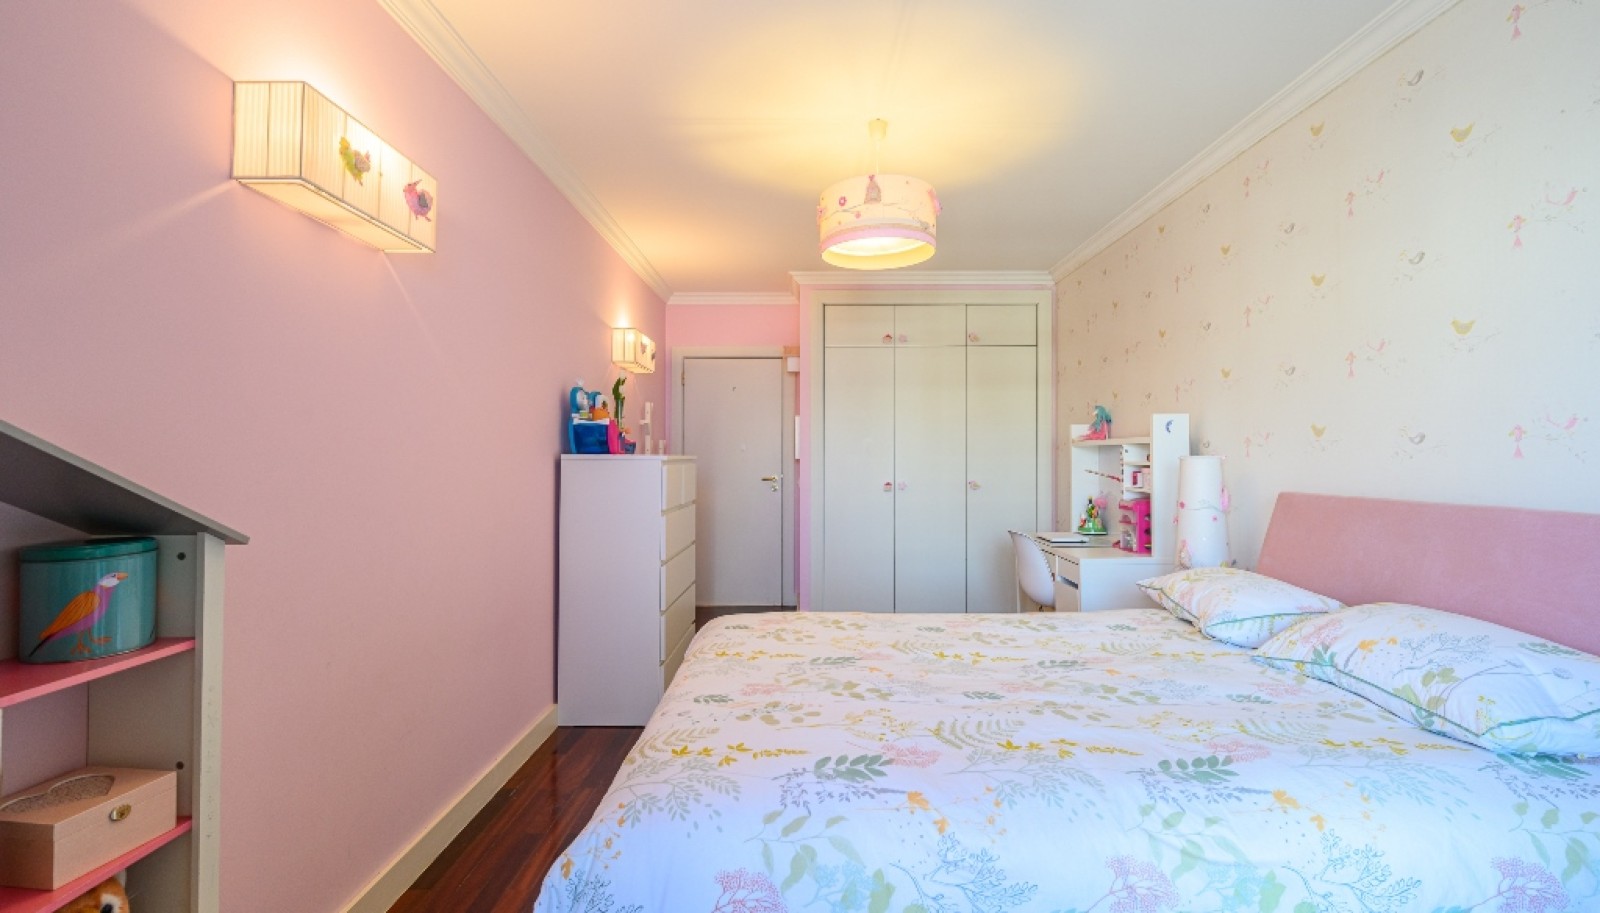 Appartement 3+1 chambres à vendre à Afurada, Vila Nova de Gaia, Portugal_251518